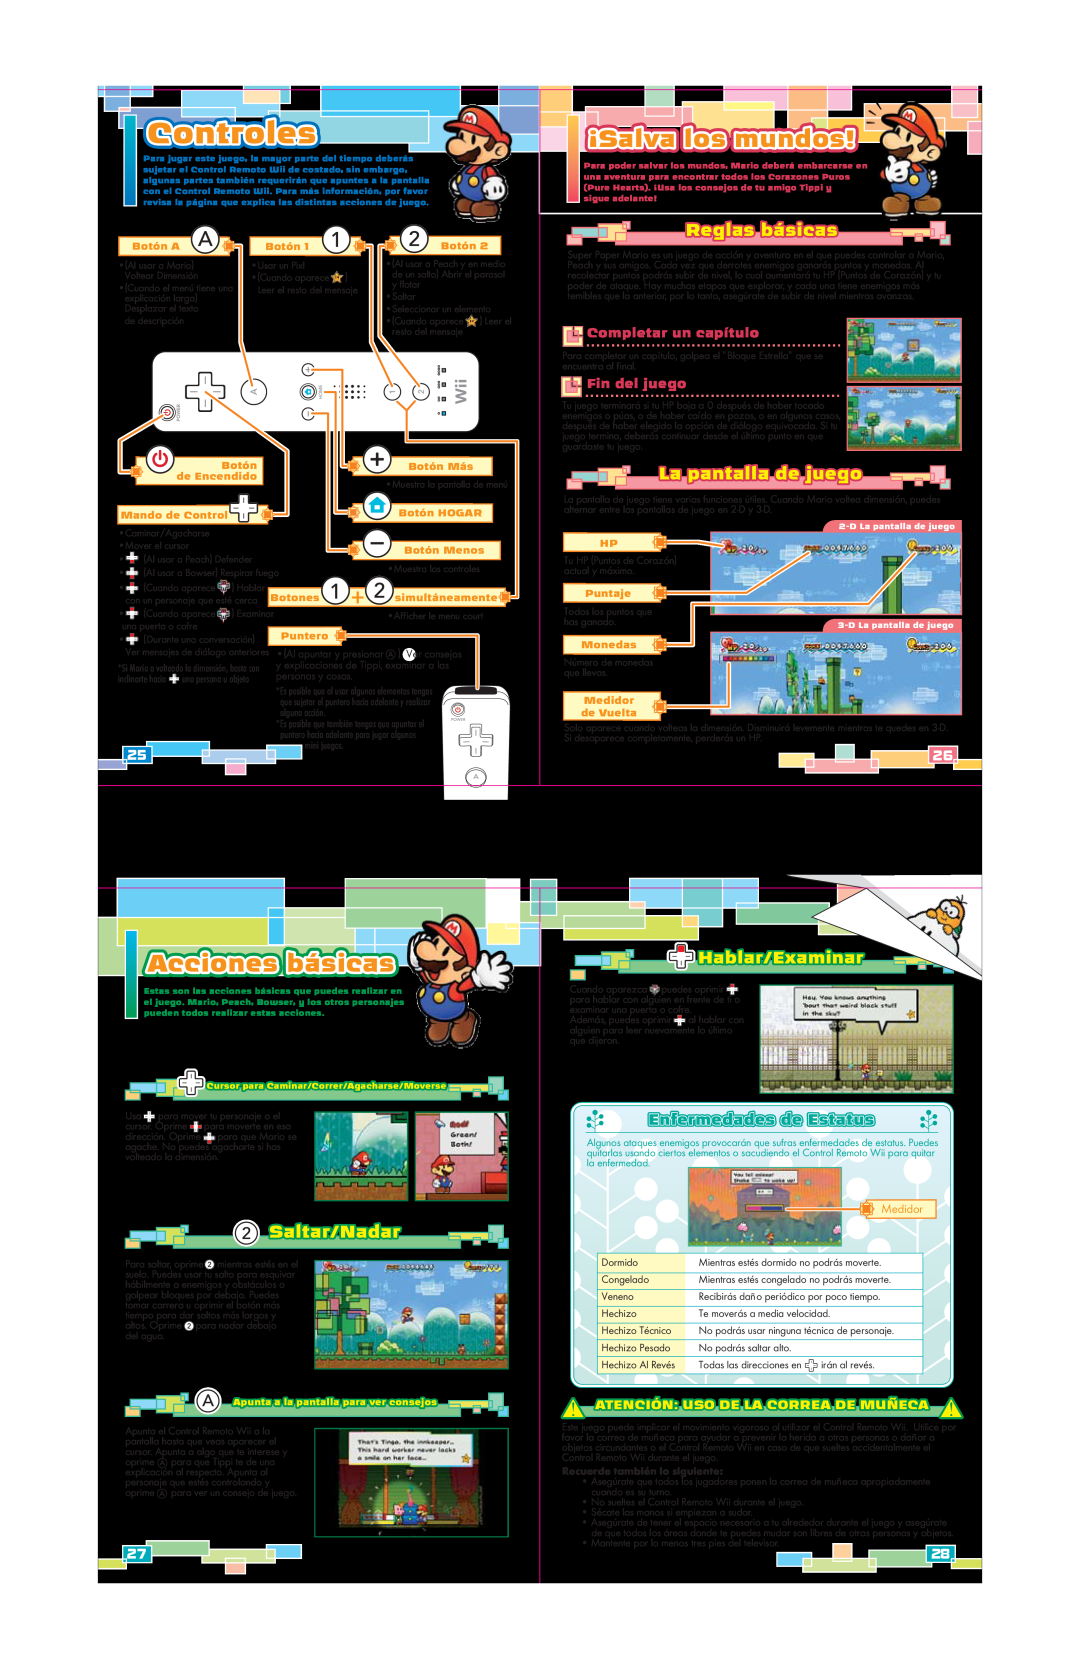 Nintendo 45496902629 Controles, Reglas básicas, La pantalla de juego, Saltar/Nadar, Hablar/Examinar, Completar un capítulo 